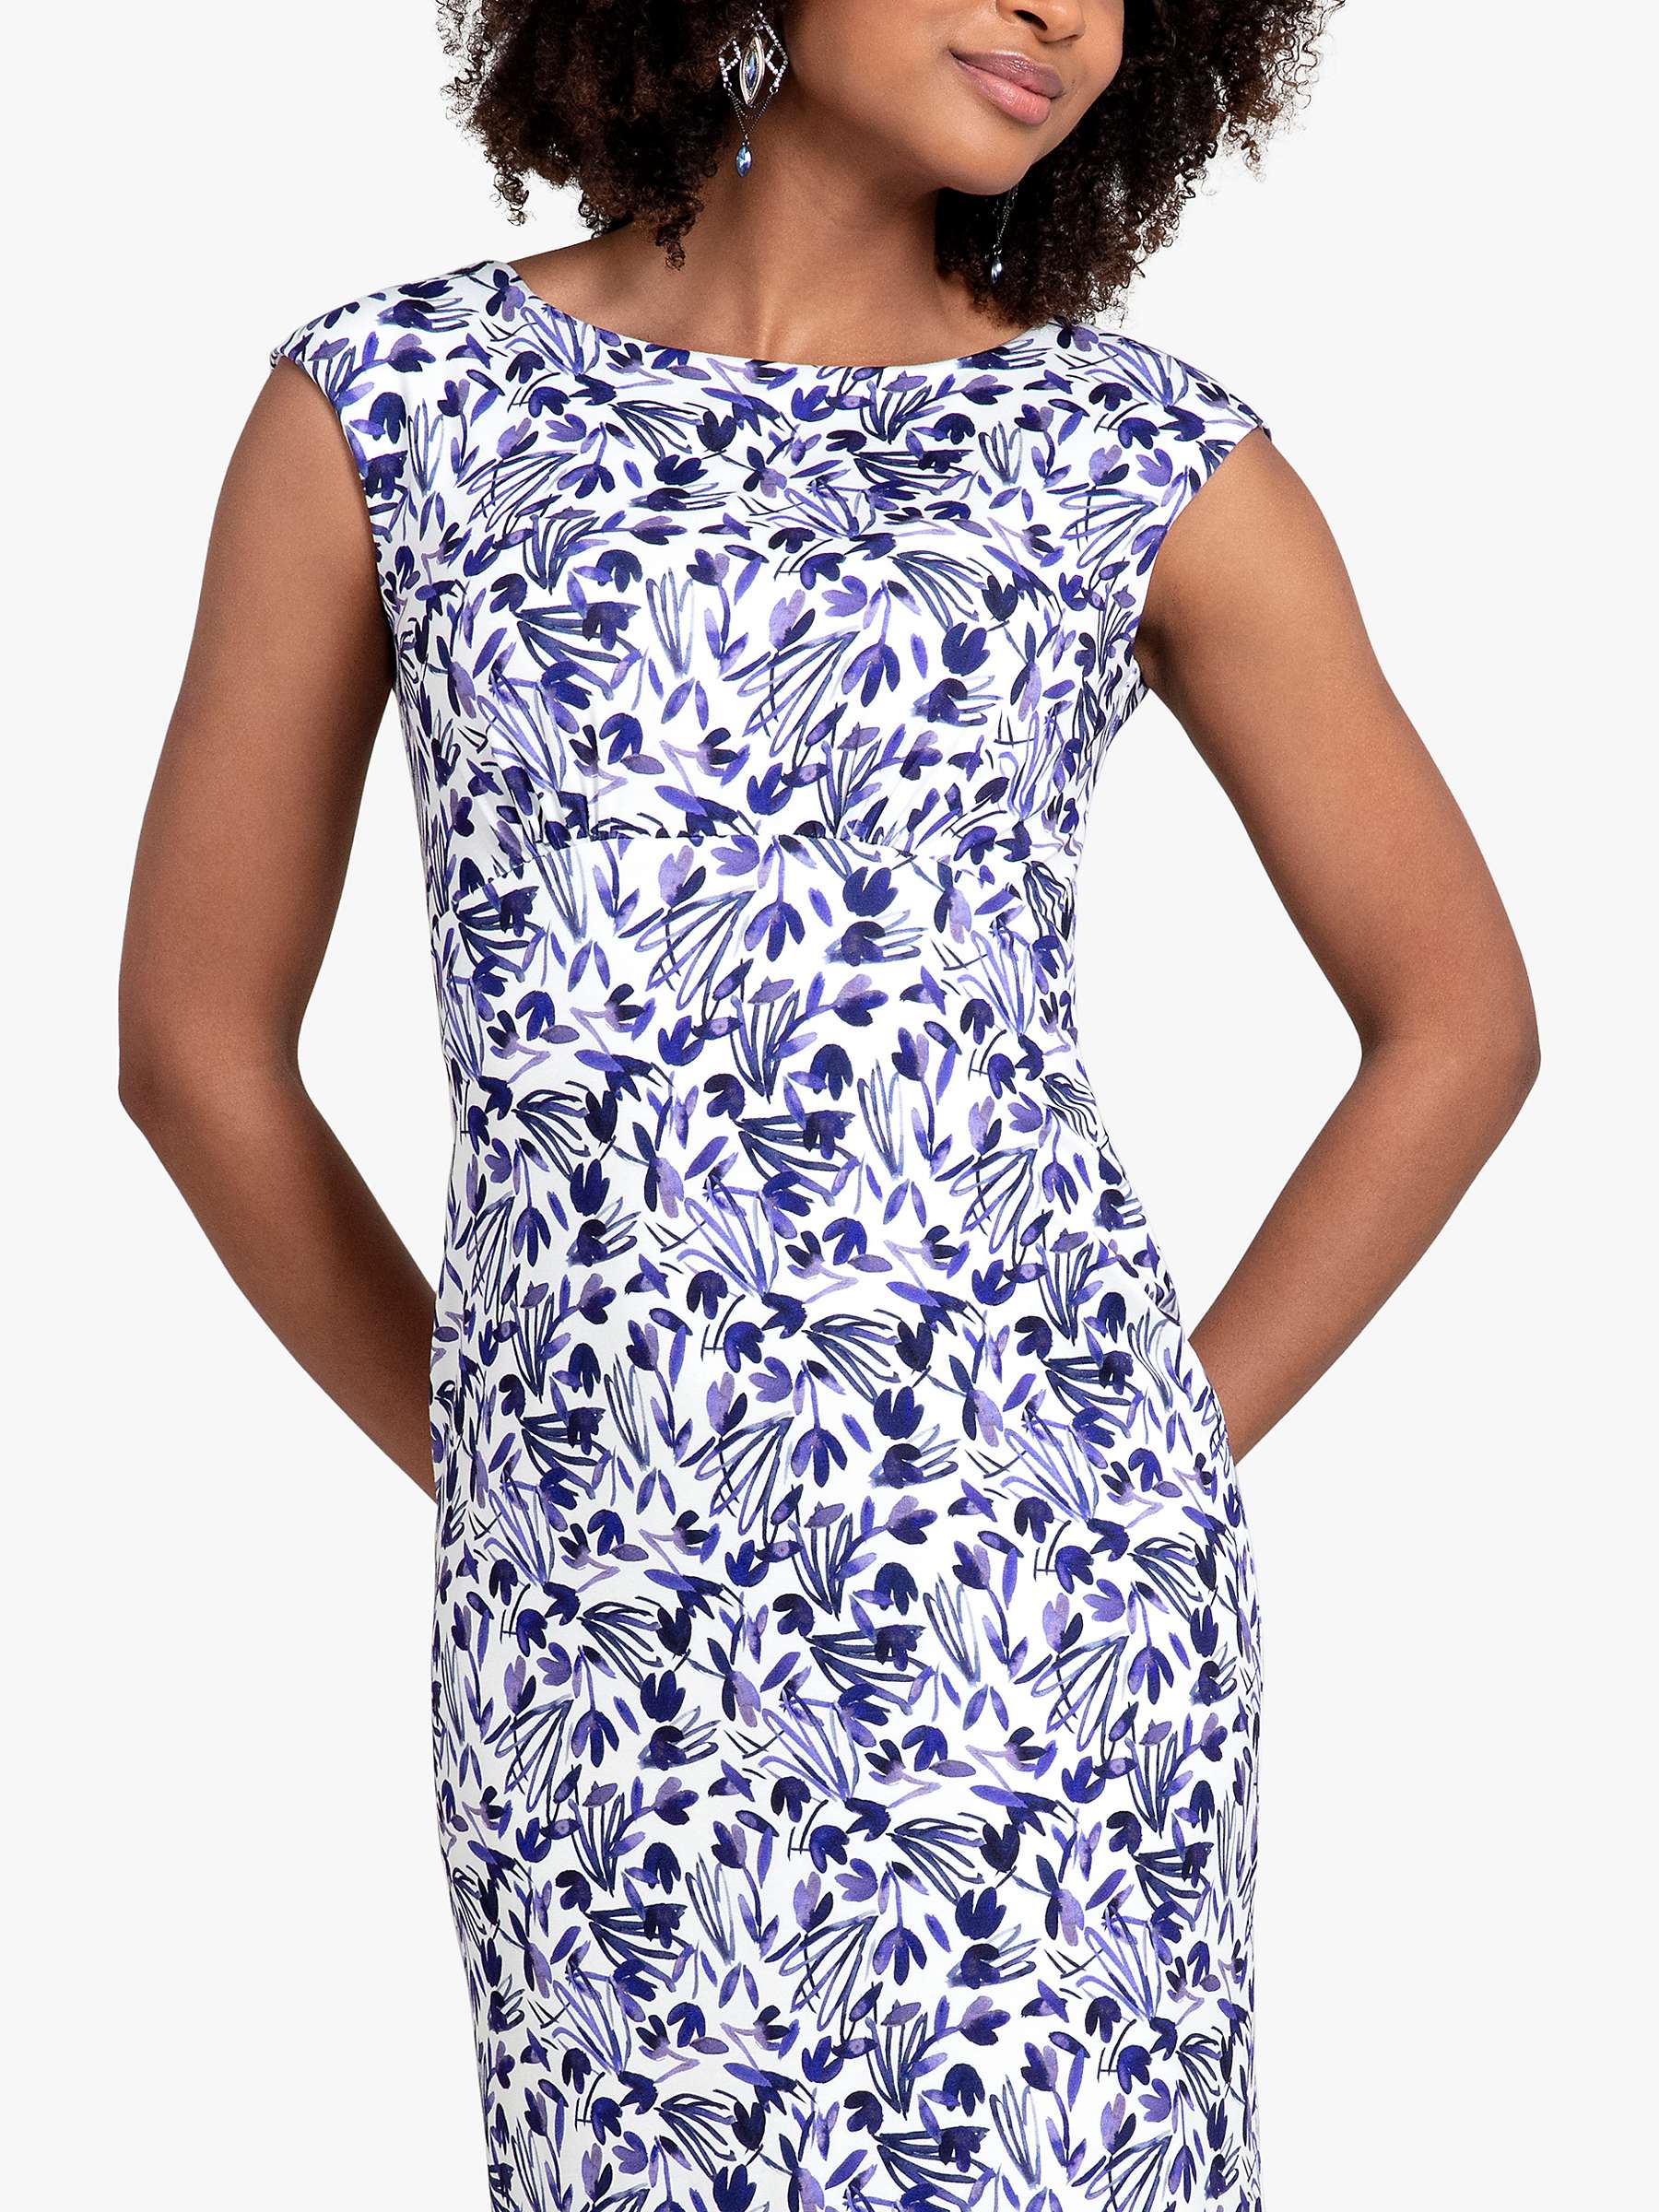 Buy Alie Street Pippa Floral Shift Dress, Indigo Ink Blue Online at johnlewis.com